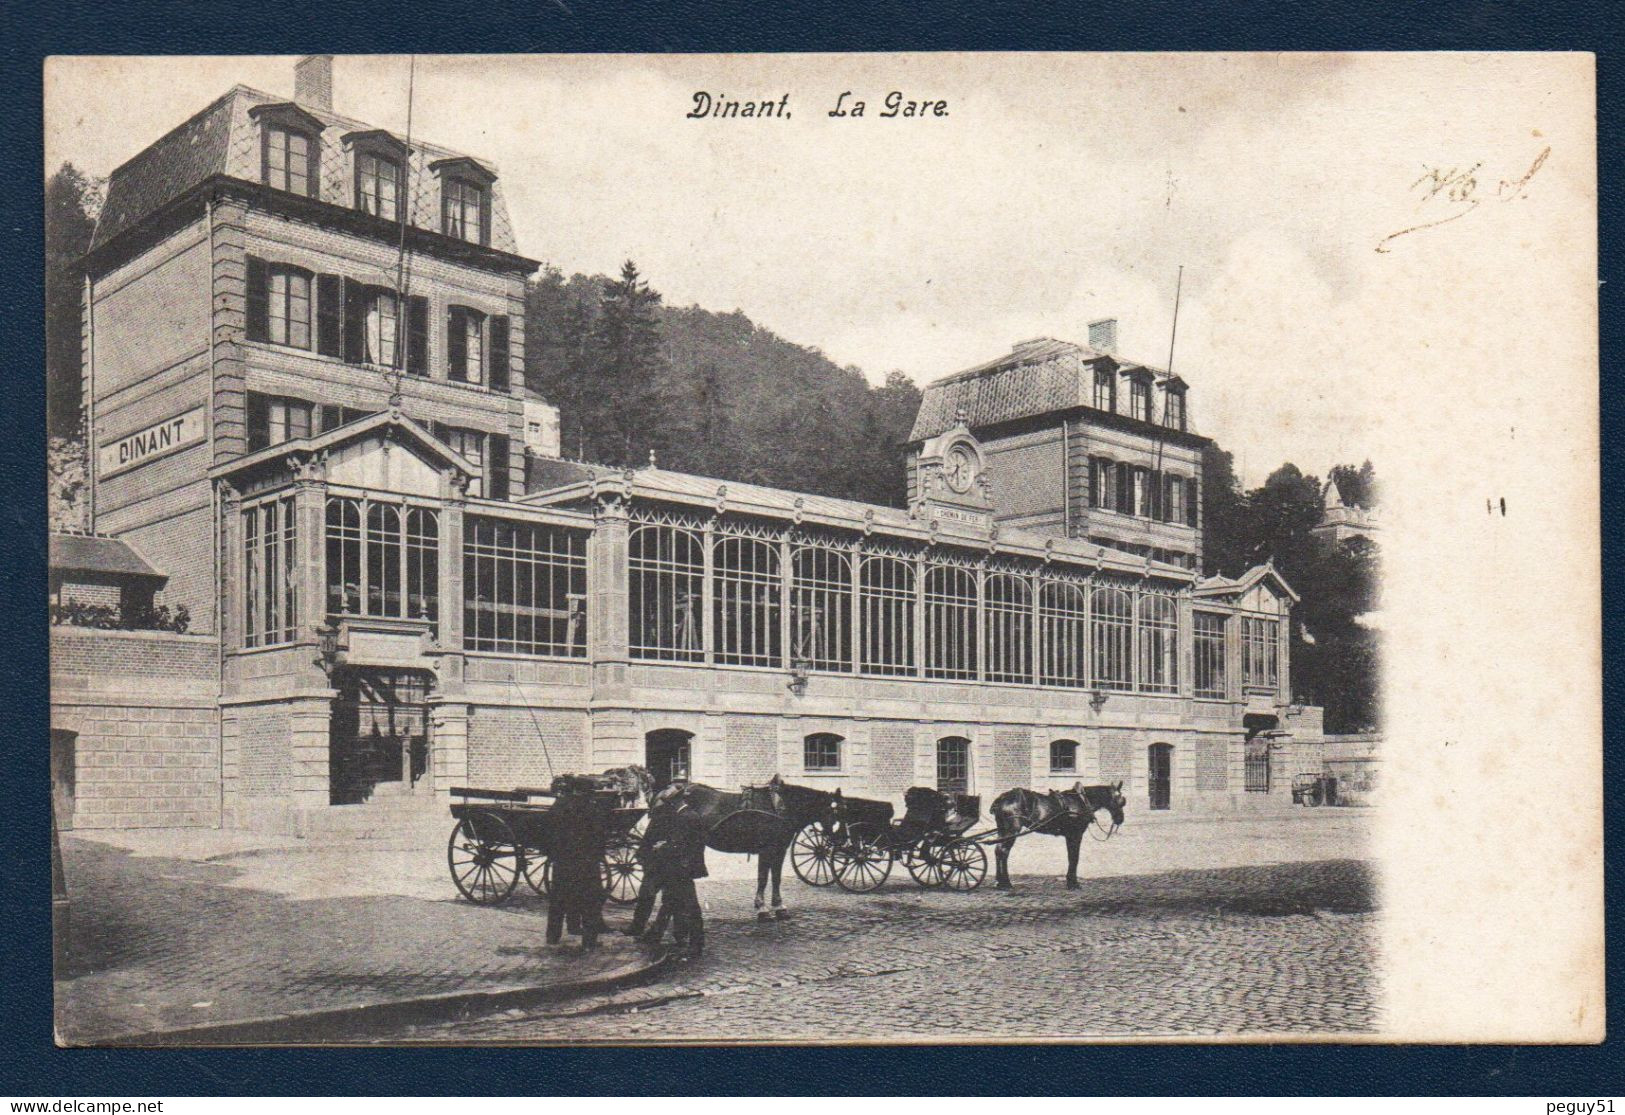 Dinant. La Gare. Ligne 154 (Namur-Dinant. 1862. Frontière Française, Givet 1863). Calèches. 1905 - Dinant